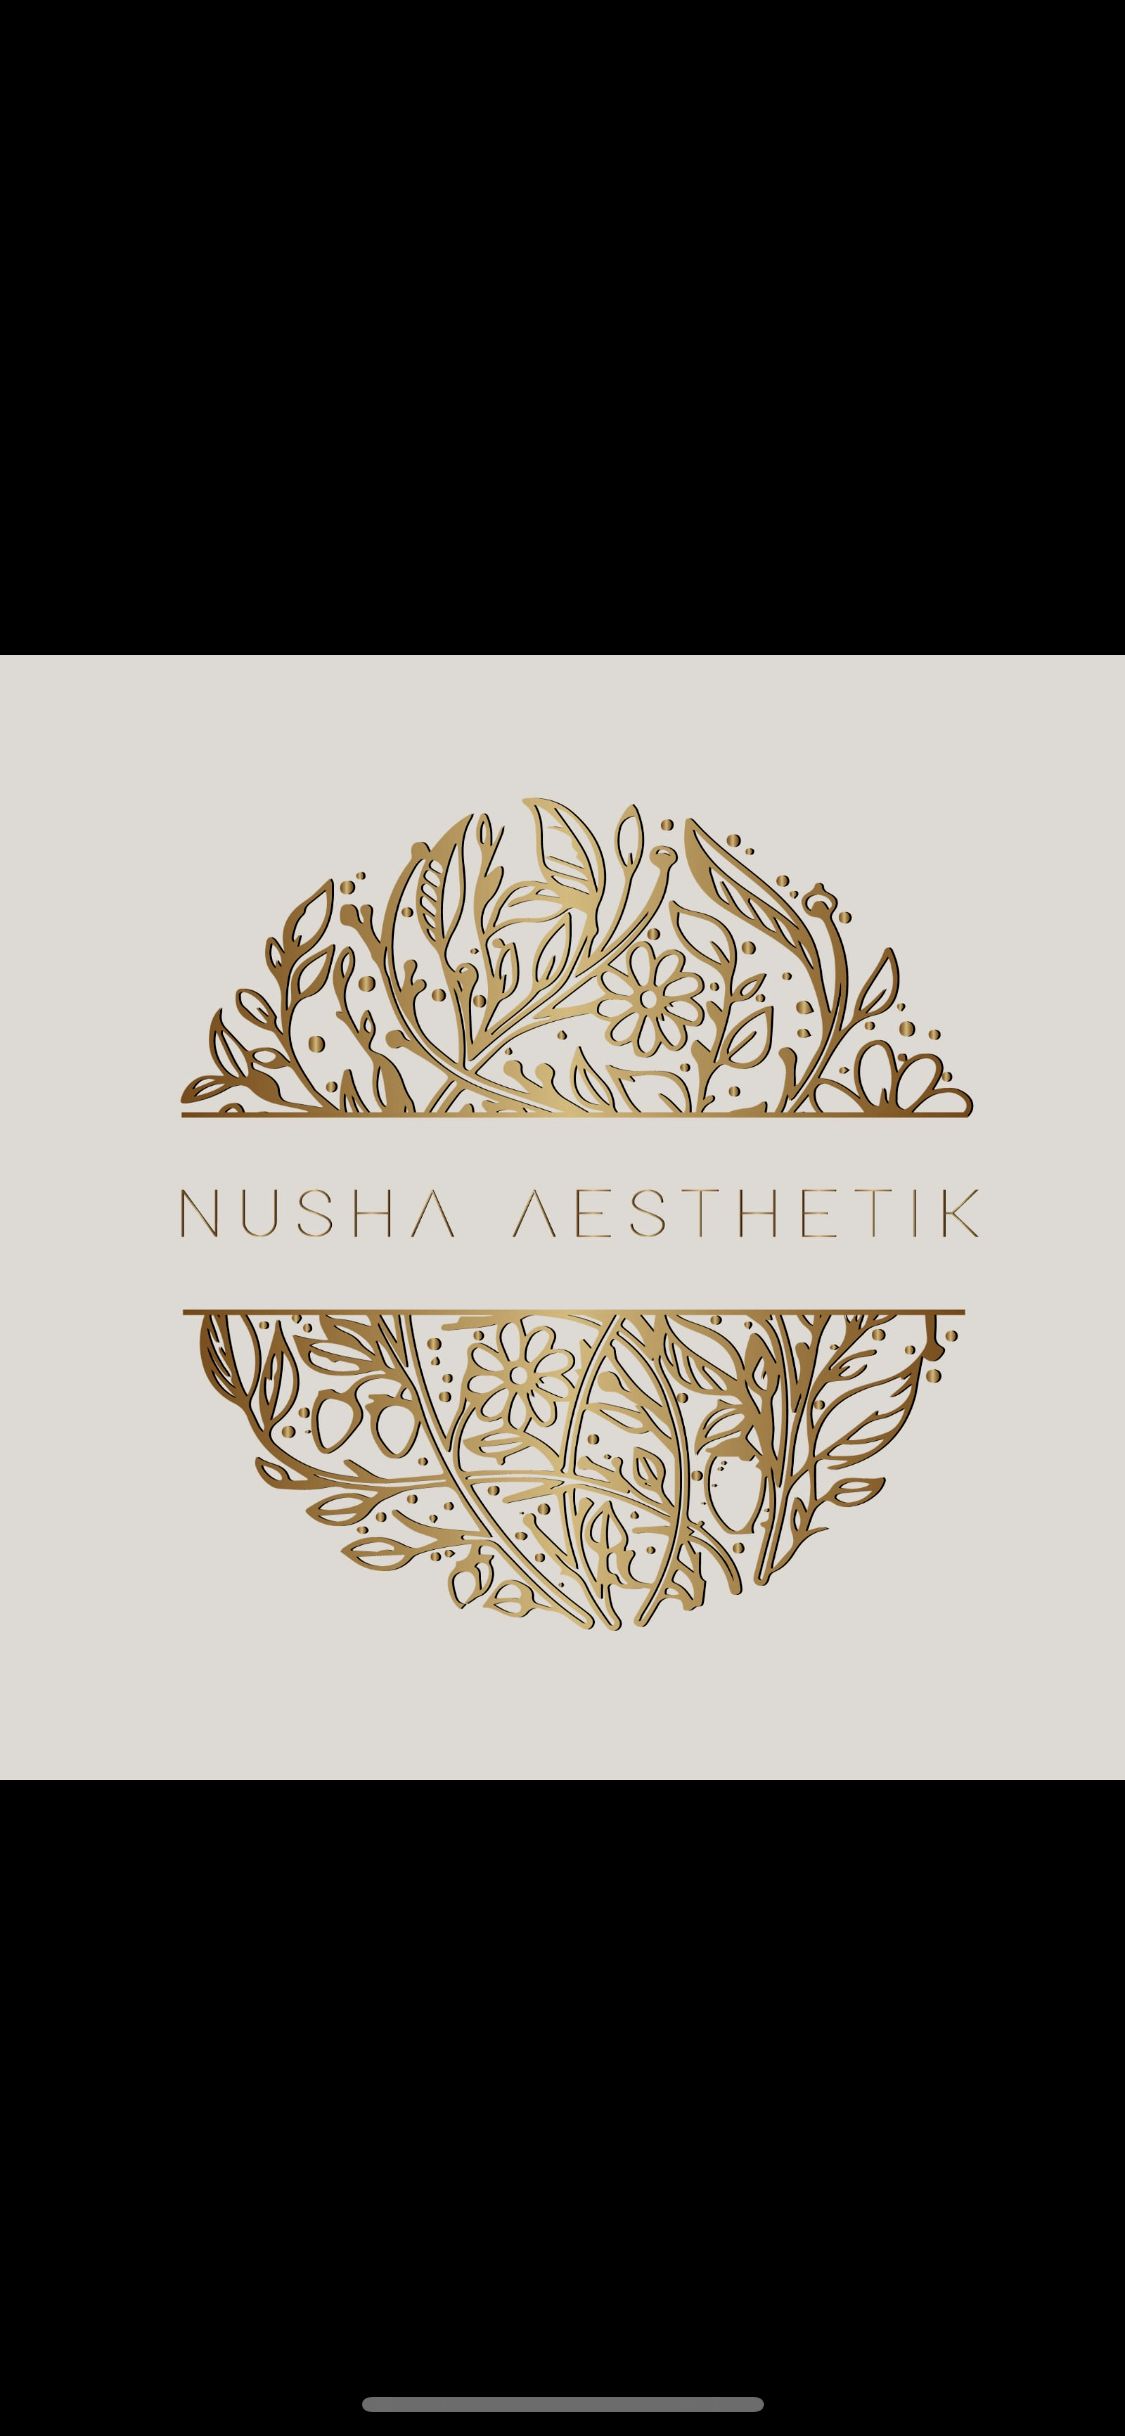 Nusha Aesthetik